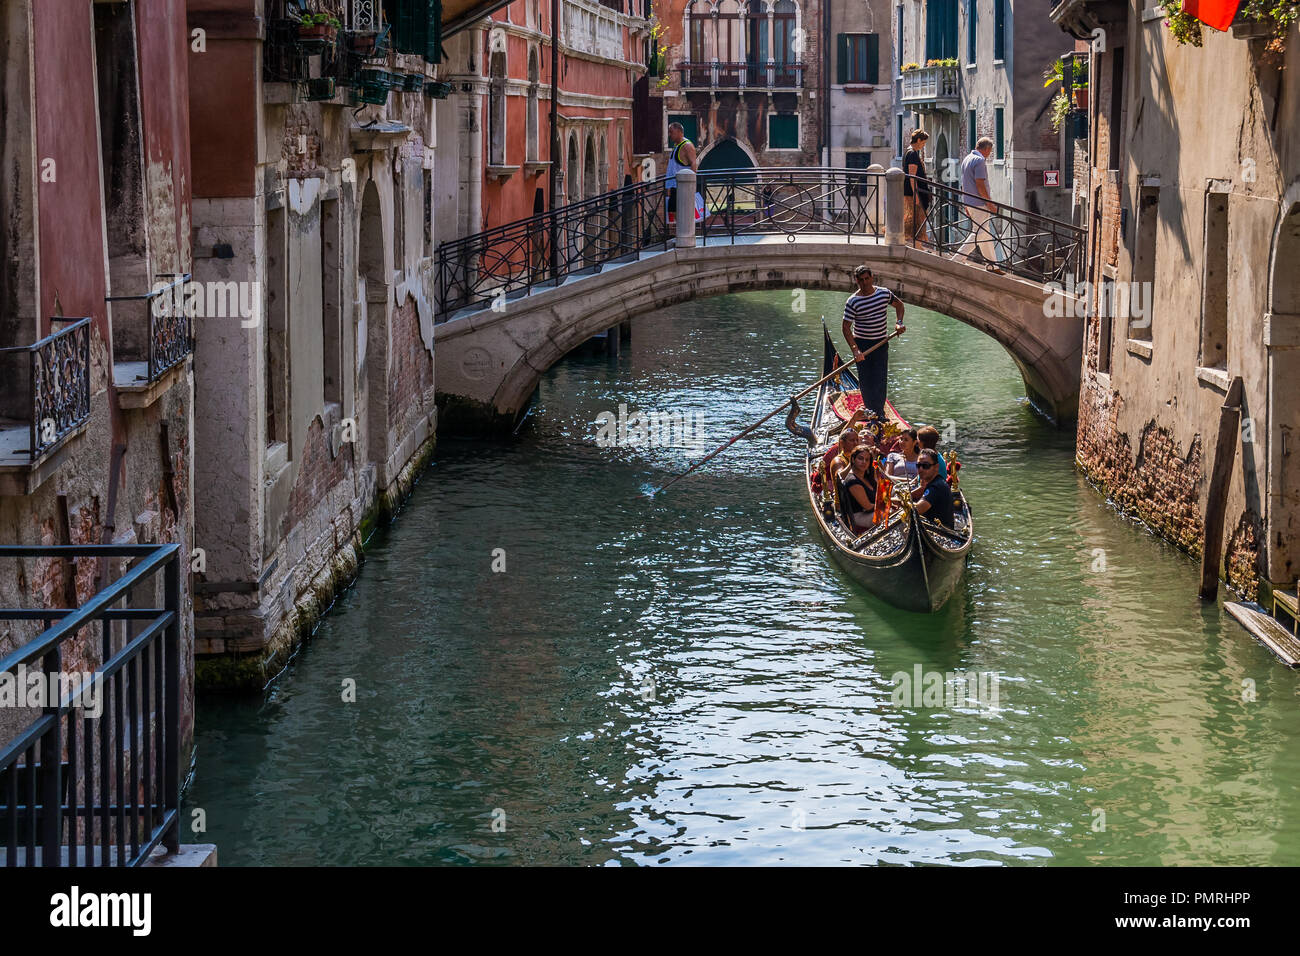 Les touristes qui gondole dans un petit canal à Venise, Italie. Banque D'Images